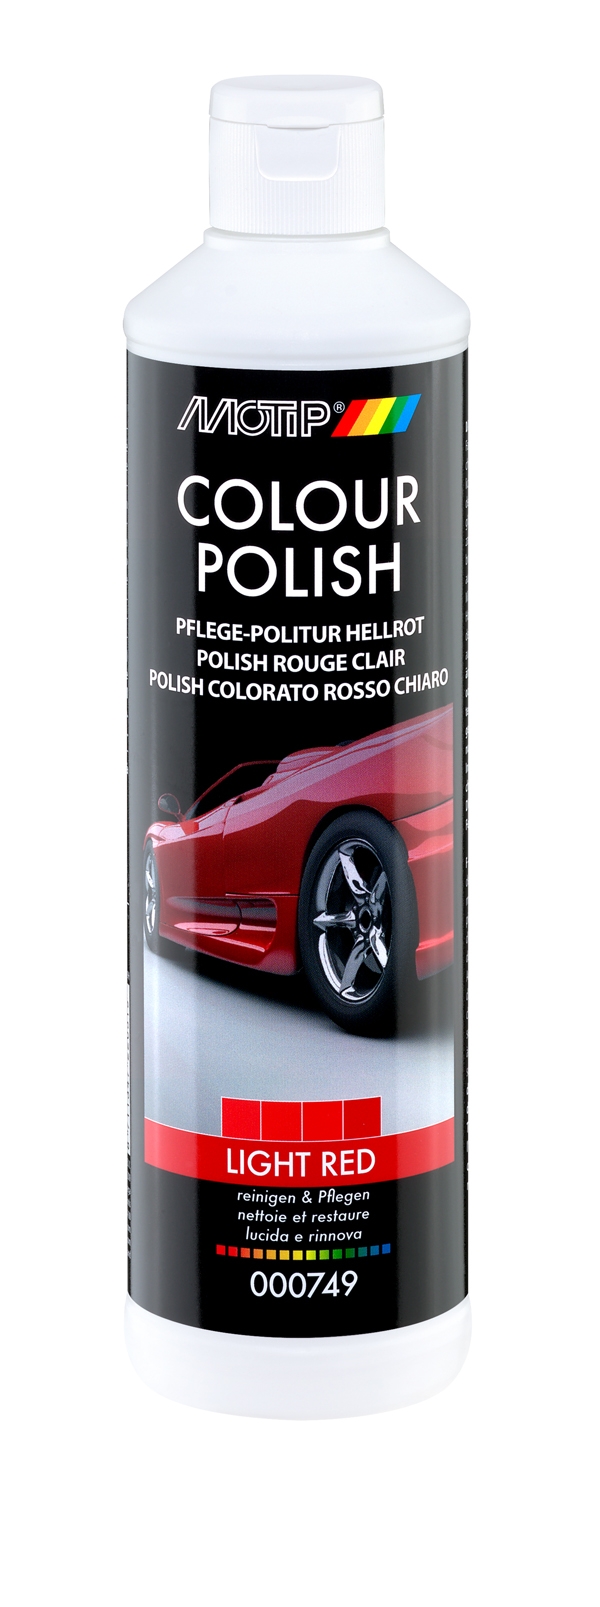 POLISH Carrosserie Couleur ROUGE CLAIR - 500ml - MOTIP 749